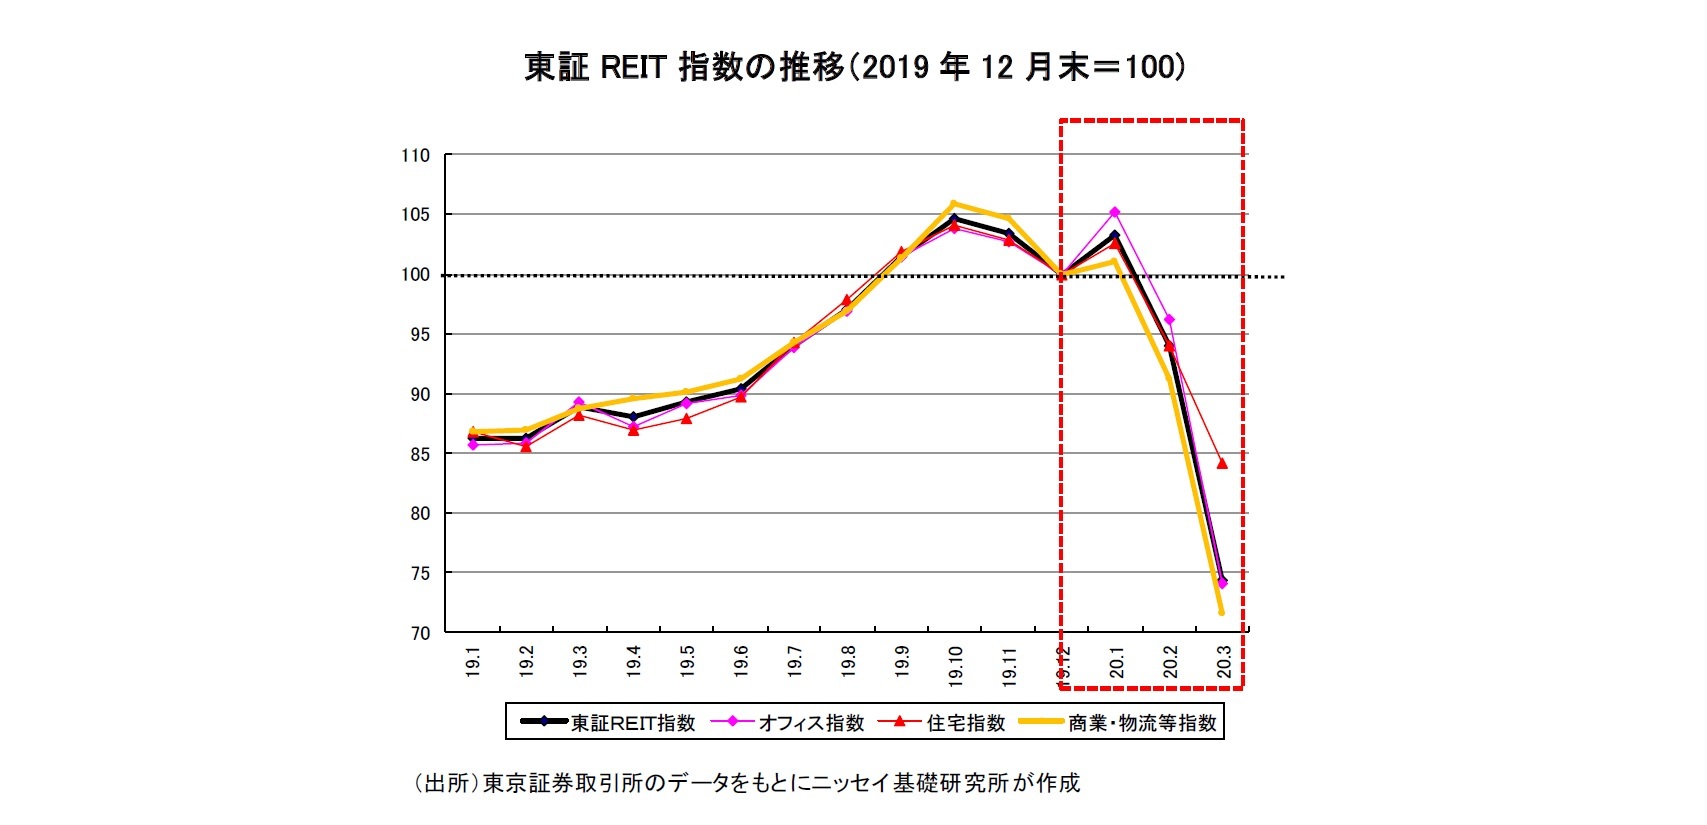 東証REIT 指数の推移（2019 年12 月末＝100)